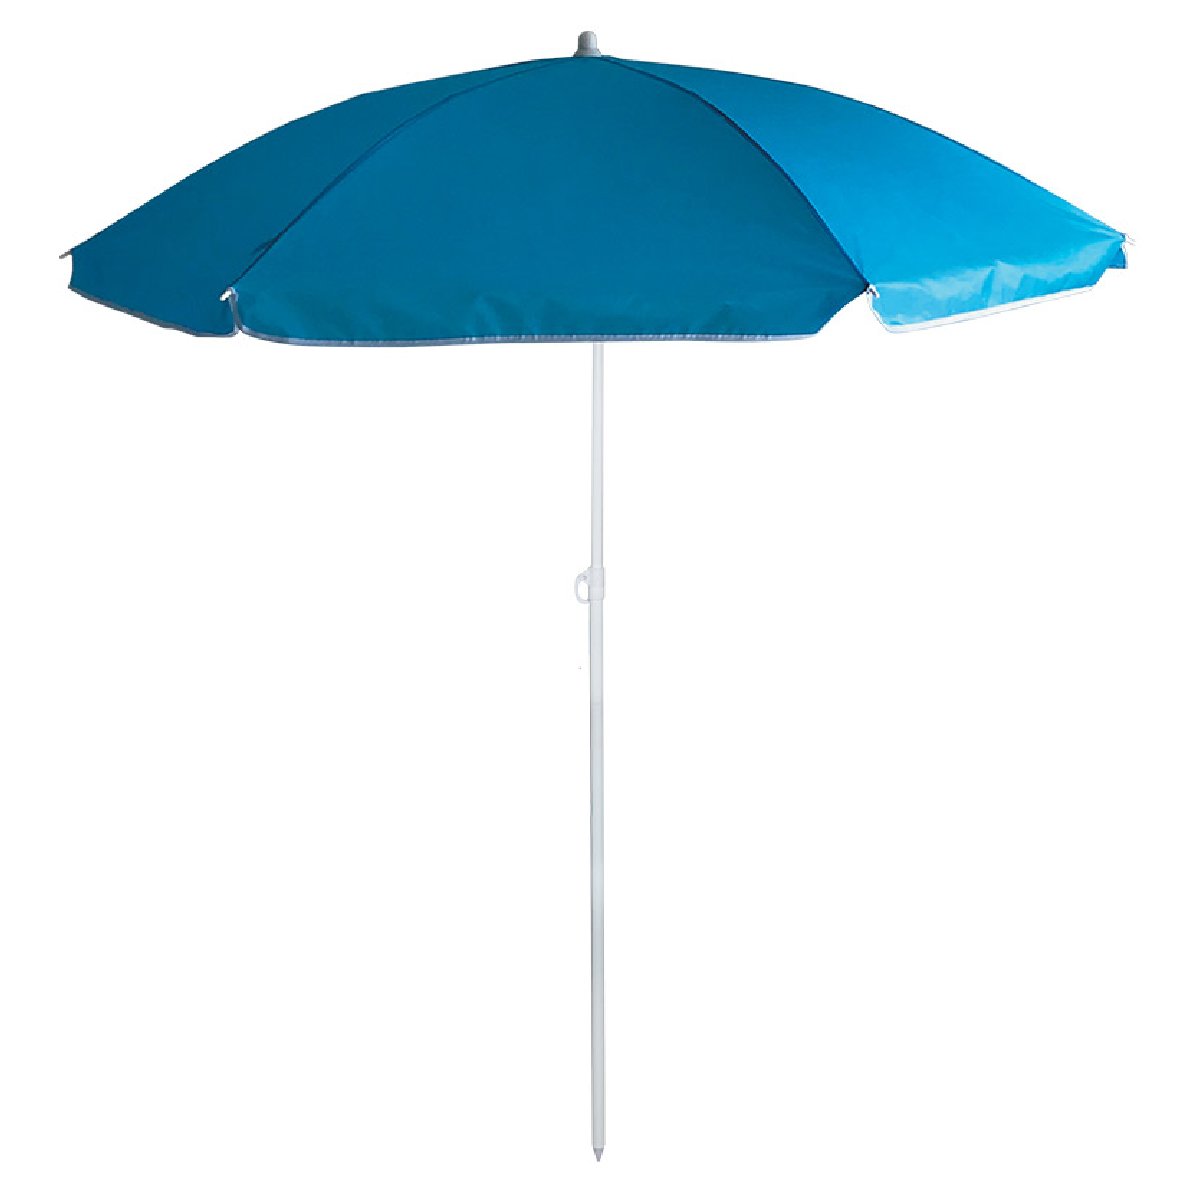 Зонт пляжный BU-63 диаметр 145 см, складная штанга 170 смКупить